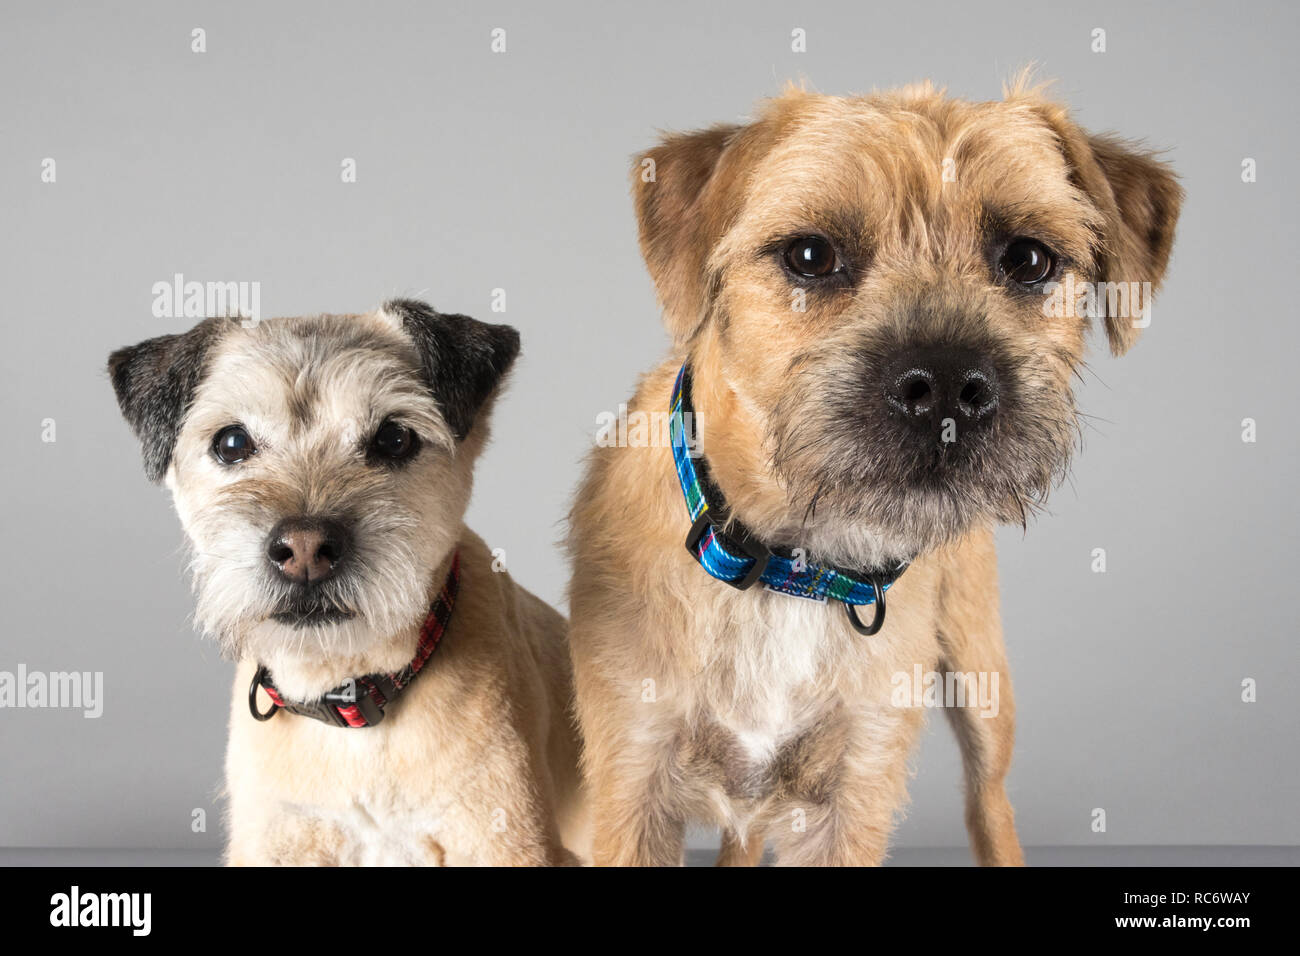 Les terriers de la frontière (adulte mûr et chiot). Amis doggy du Royaume-Uni. Double problème ! Banque D'Images